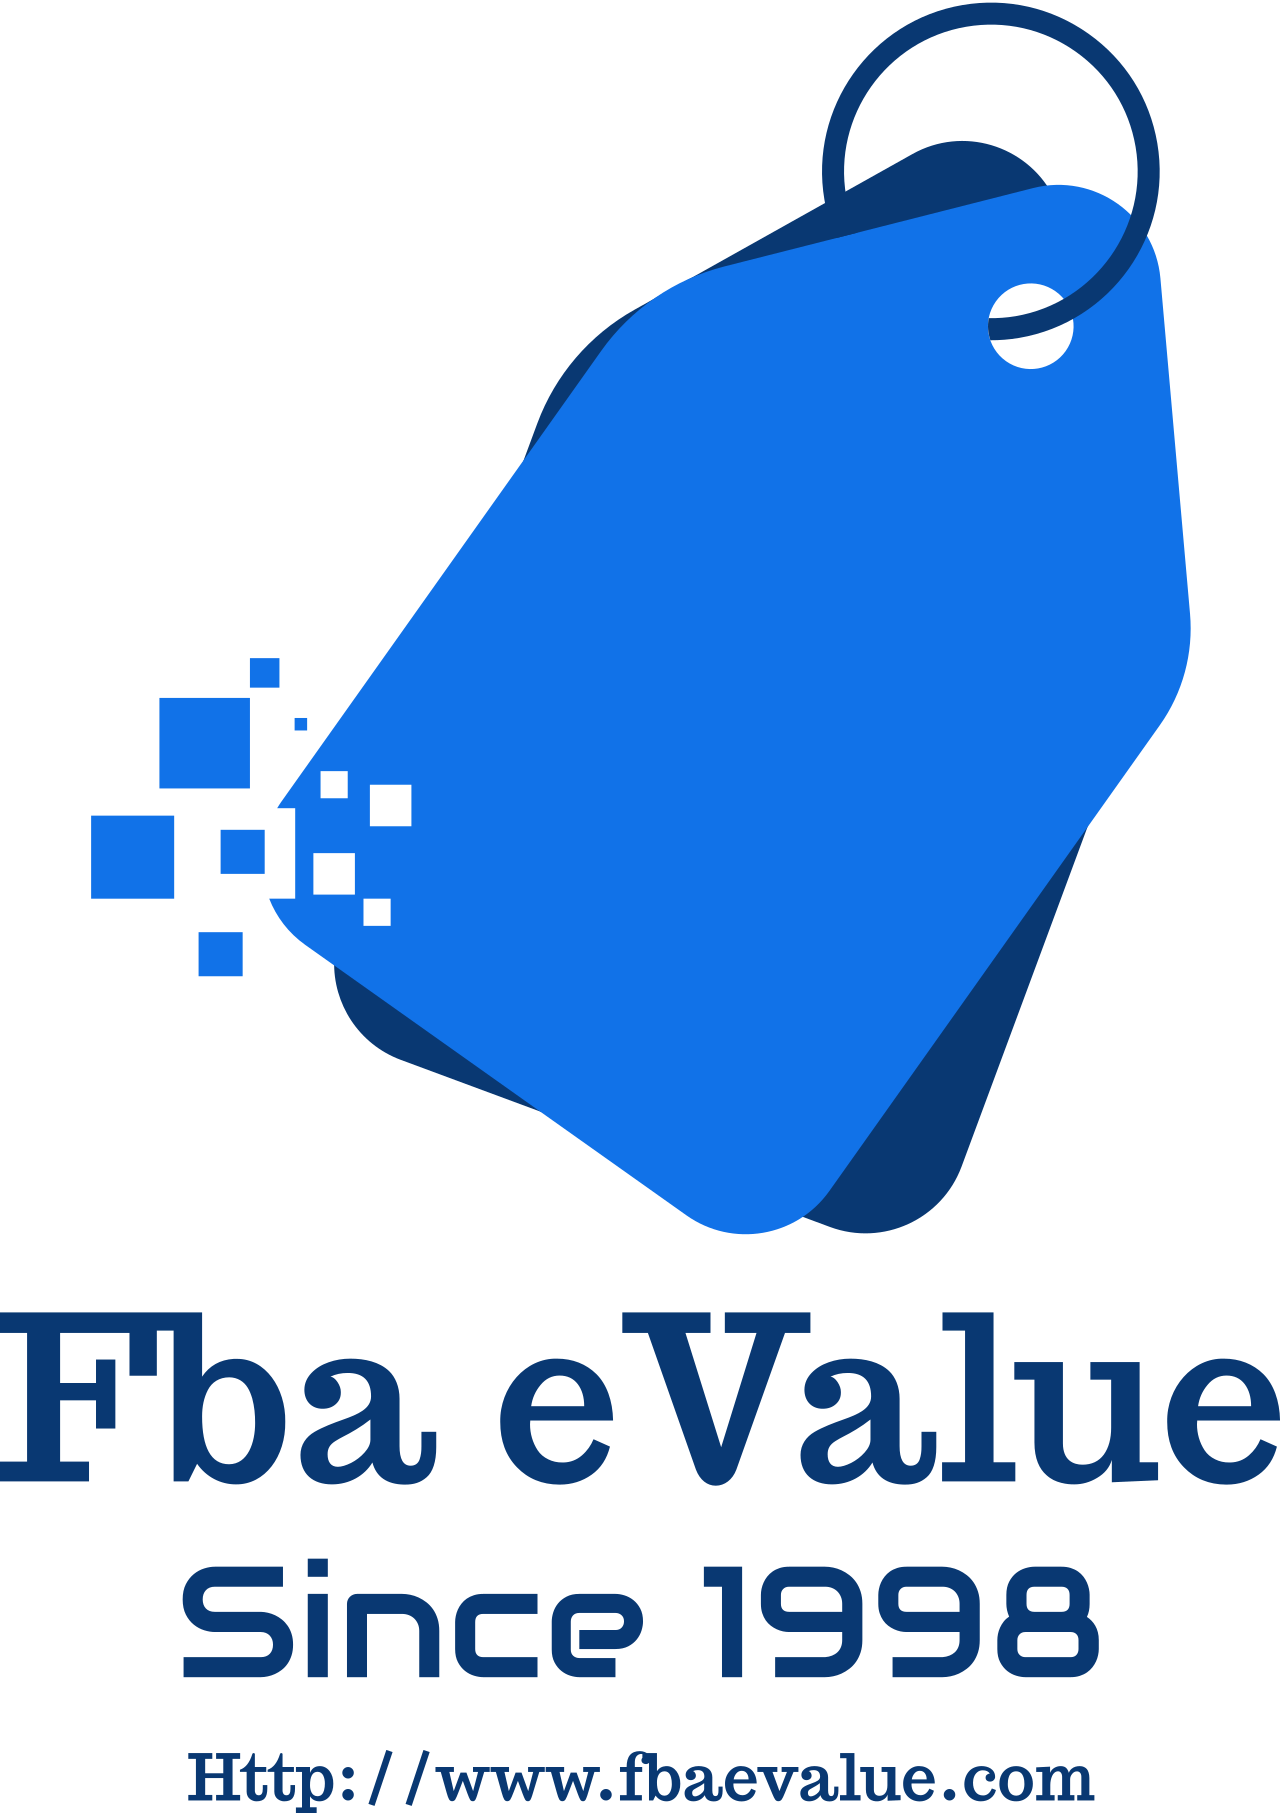 Fba eValue's logo